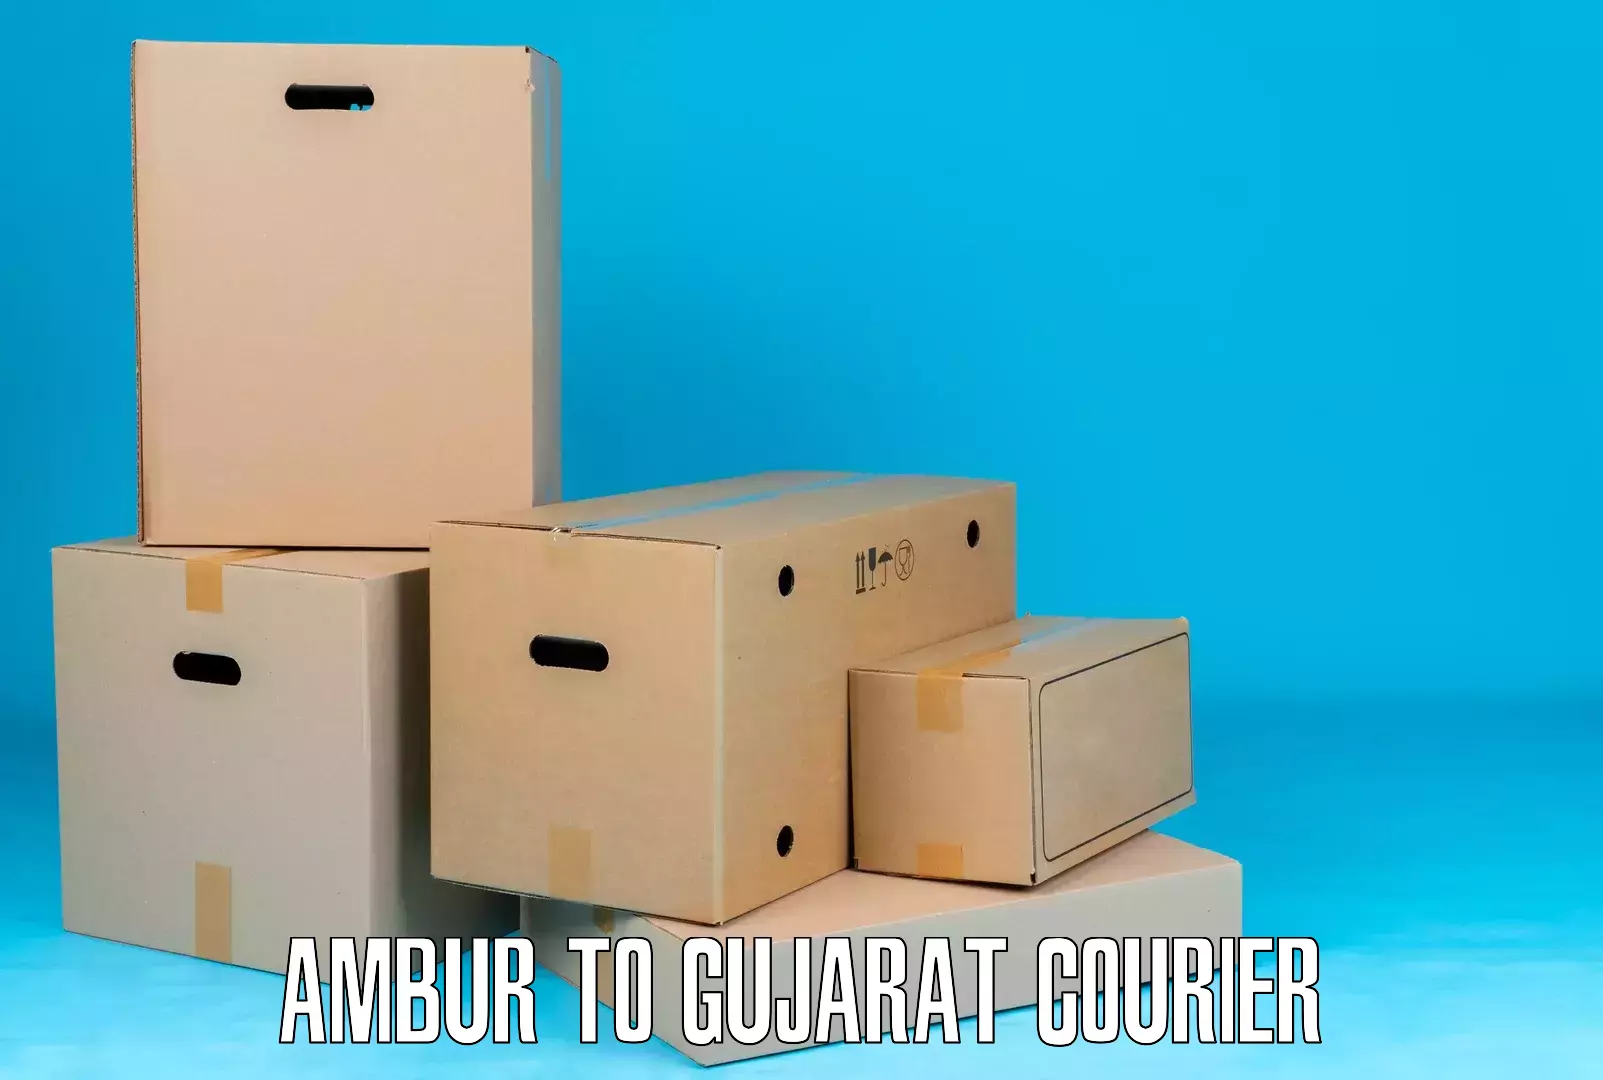 End-to-end delivery Ambur to Savar Kundla